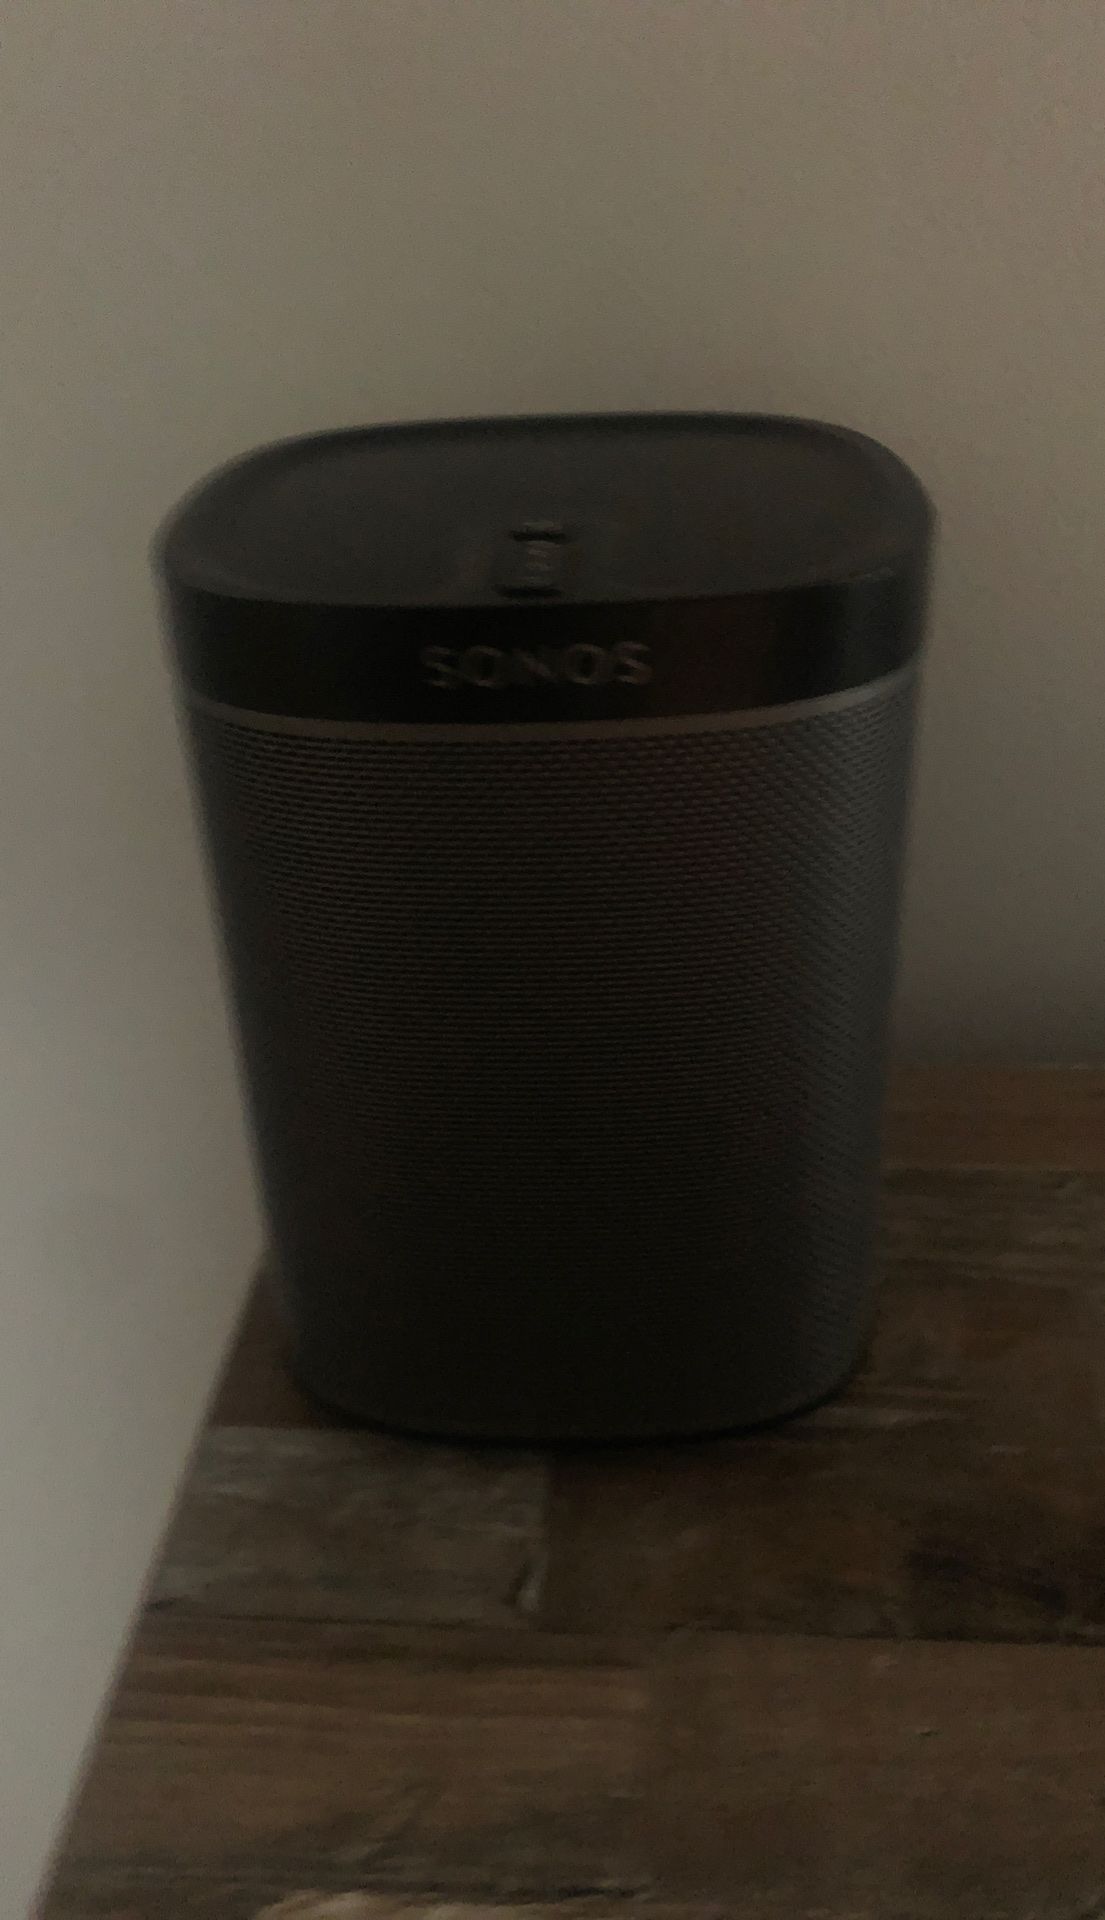 Sonos play 1 gen 2 $120 obo